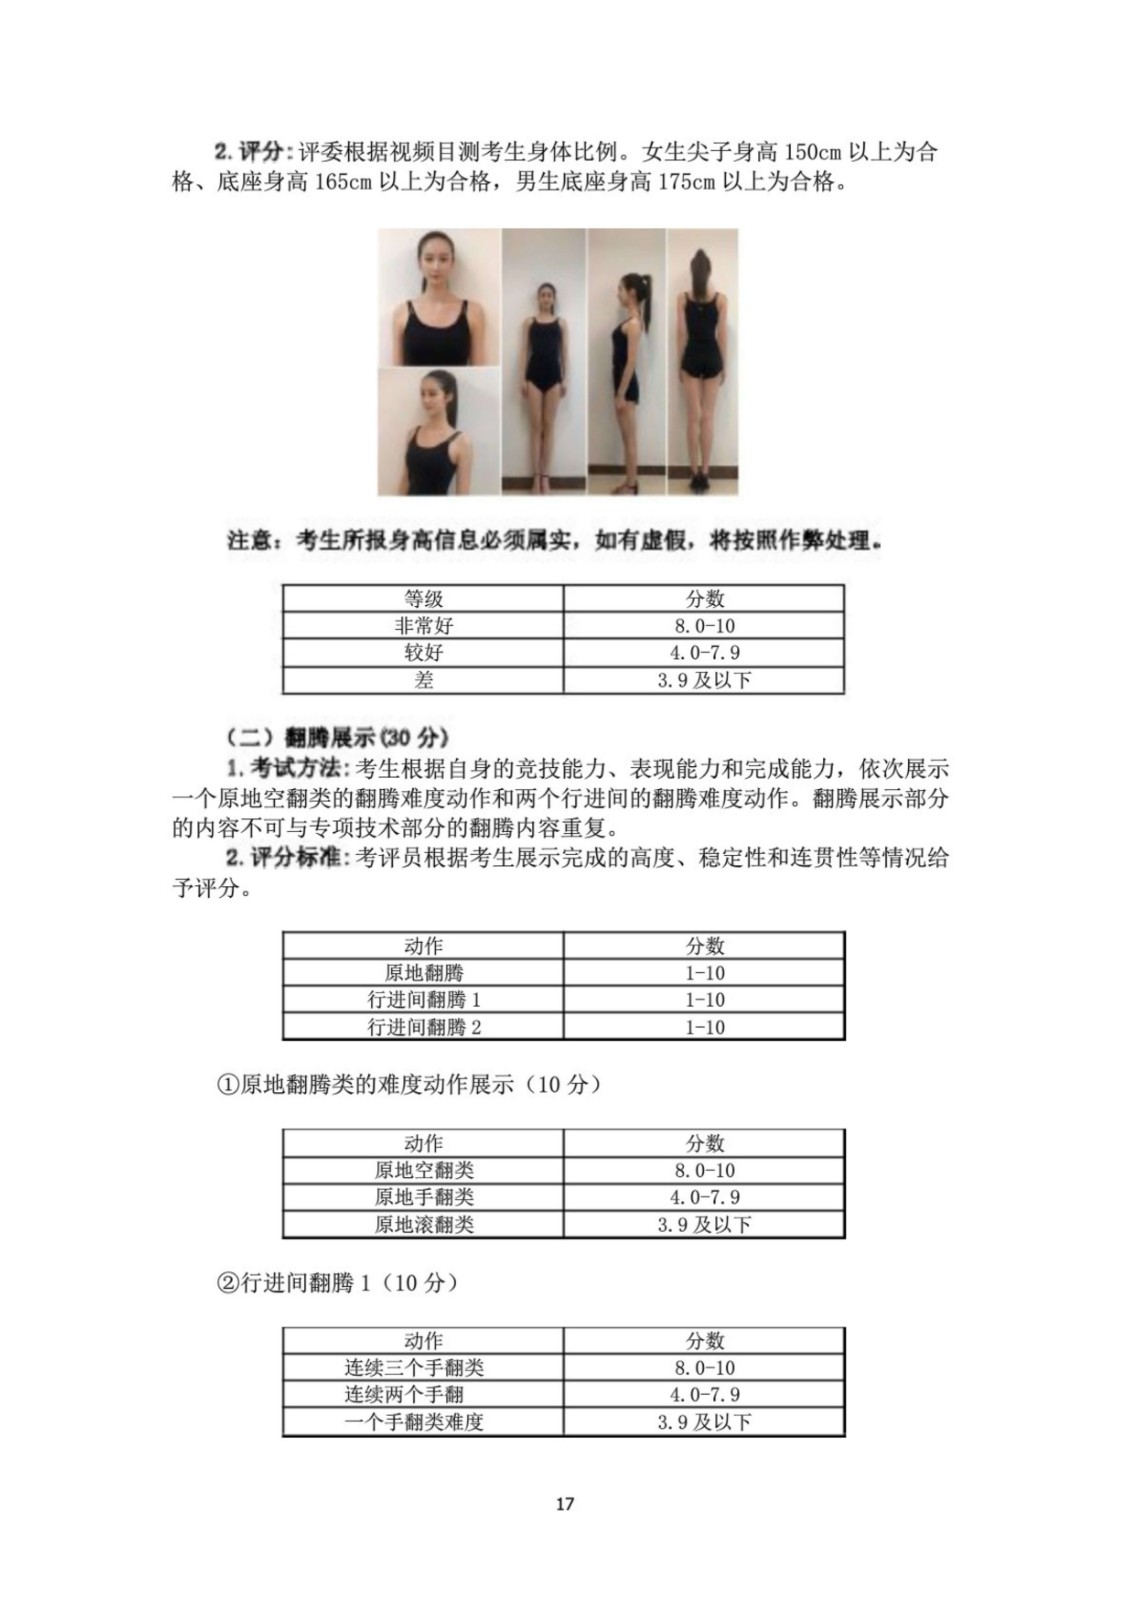 2022年广州体育学院舞蹈学、舞蹈表演专业专业校考实施办法、测试指标、测试方法与评分标准、视频录制方式及拍摄要求